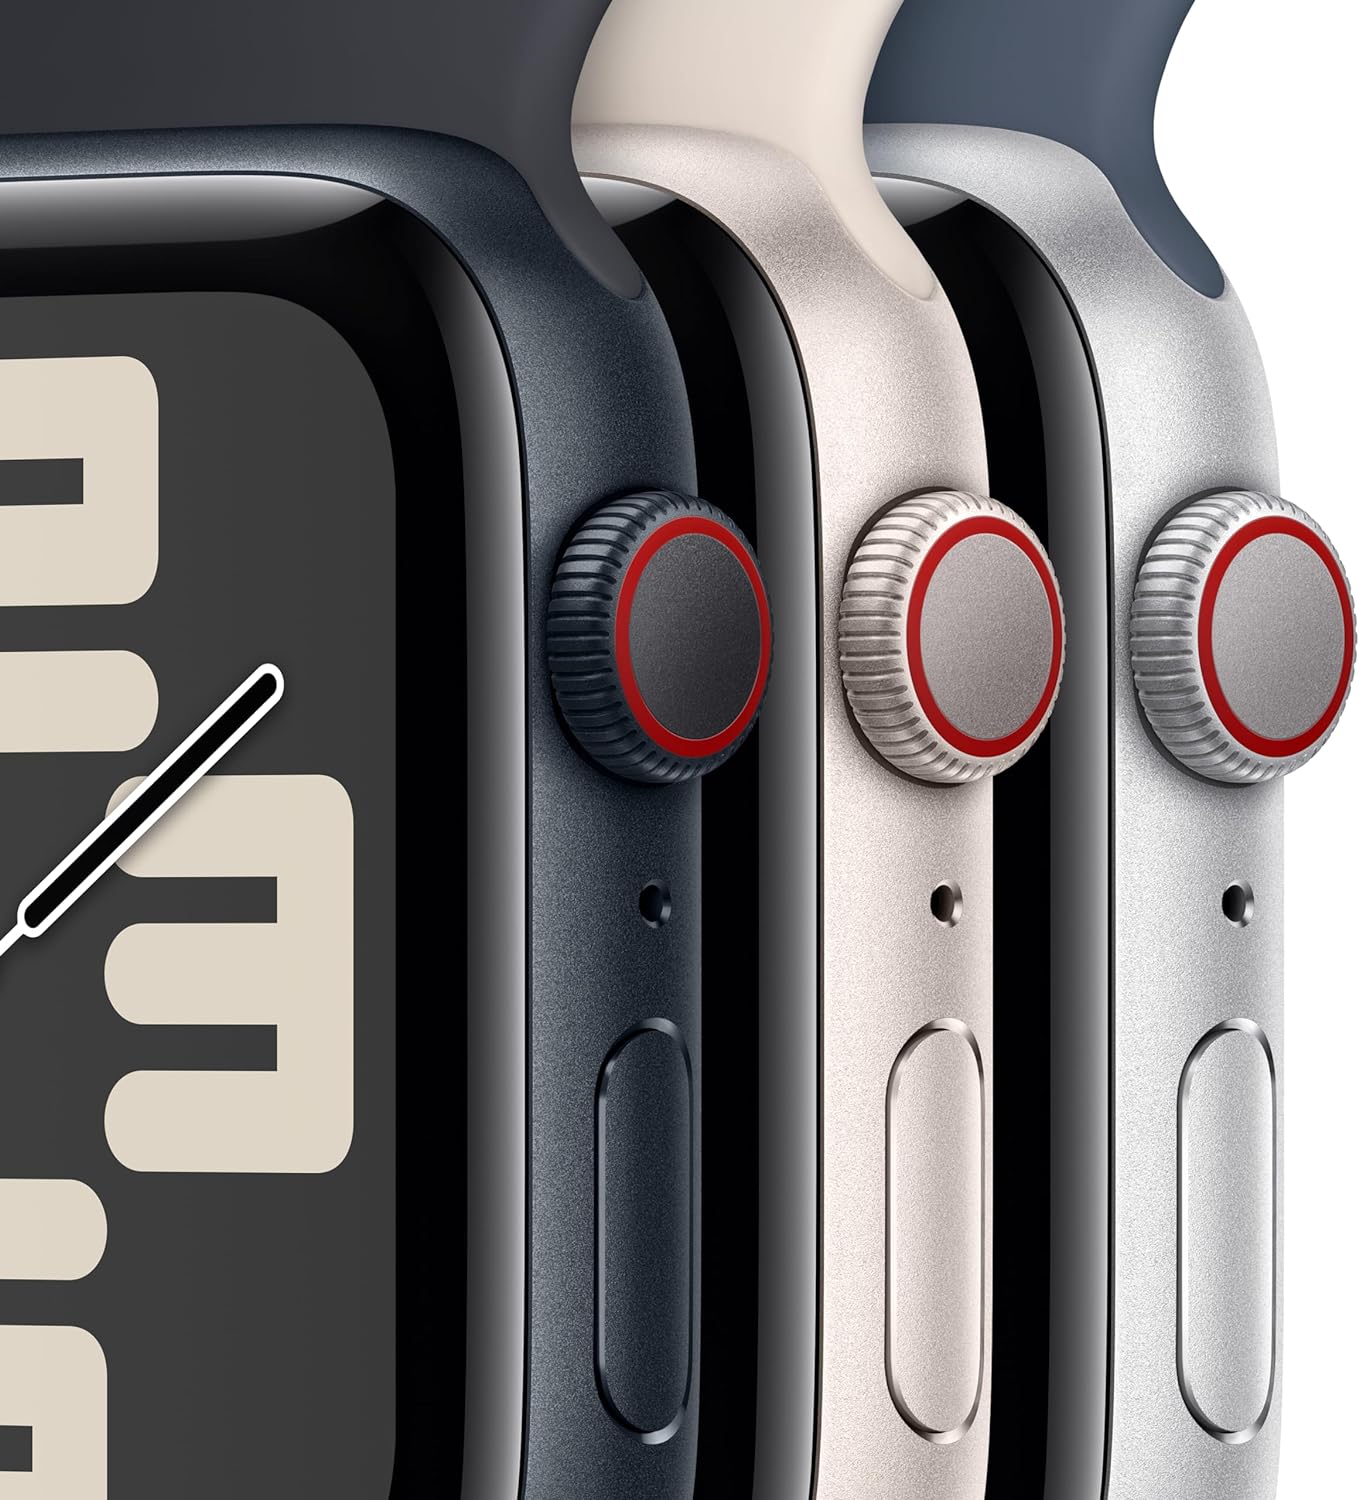 Apple Watch SE (الجيل الثاني) [GPS + Cellular 40mm] ساعة ذكية مع هيكل من الألومنيوم Starlight مع حزام Starlight الرياضي S/M. جهاز تتبع اللياقة البدنية والنوم، واكتشاف الأعطال، ومراقبة معدل ضربات القلب 